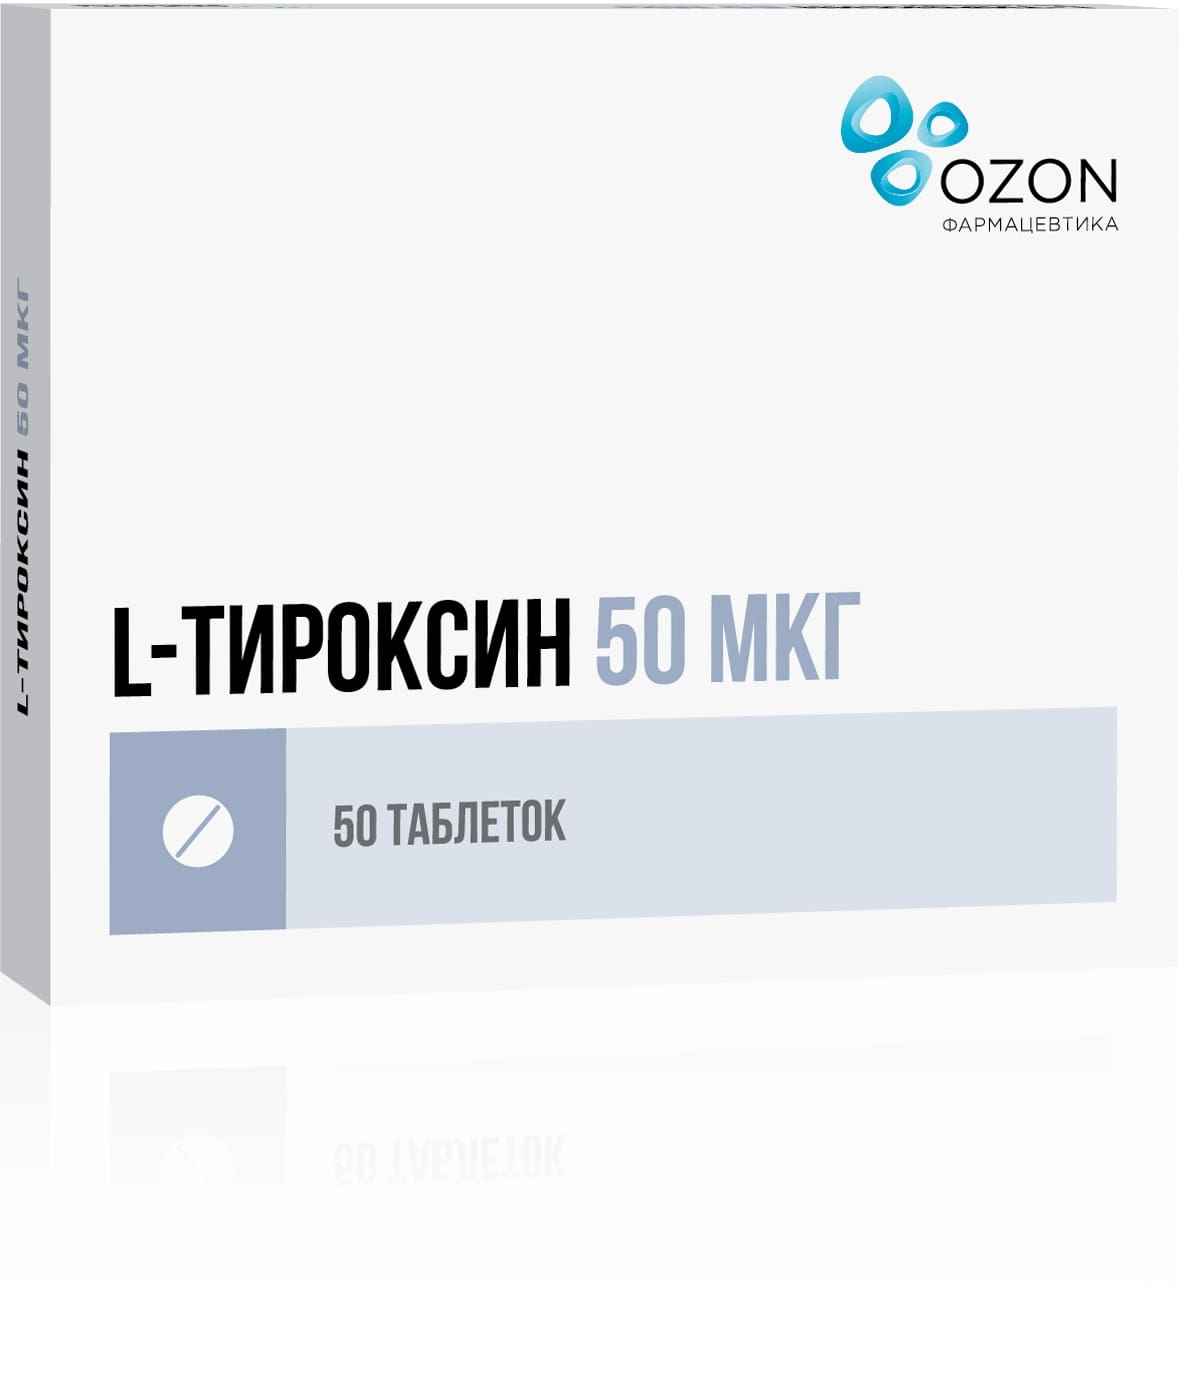 L-тироксин таблетки 100мкг 50шт - купить в Москве лекарство L-тироксин  таблетки 100мкг 50шт, официальная инструкция по применению